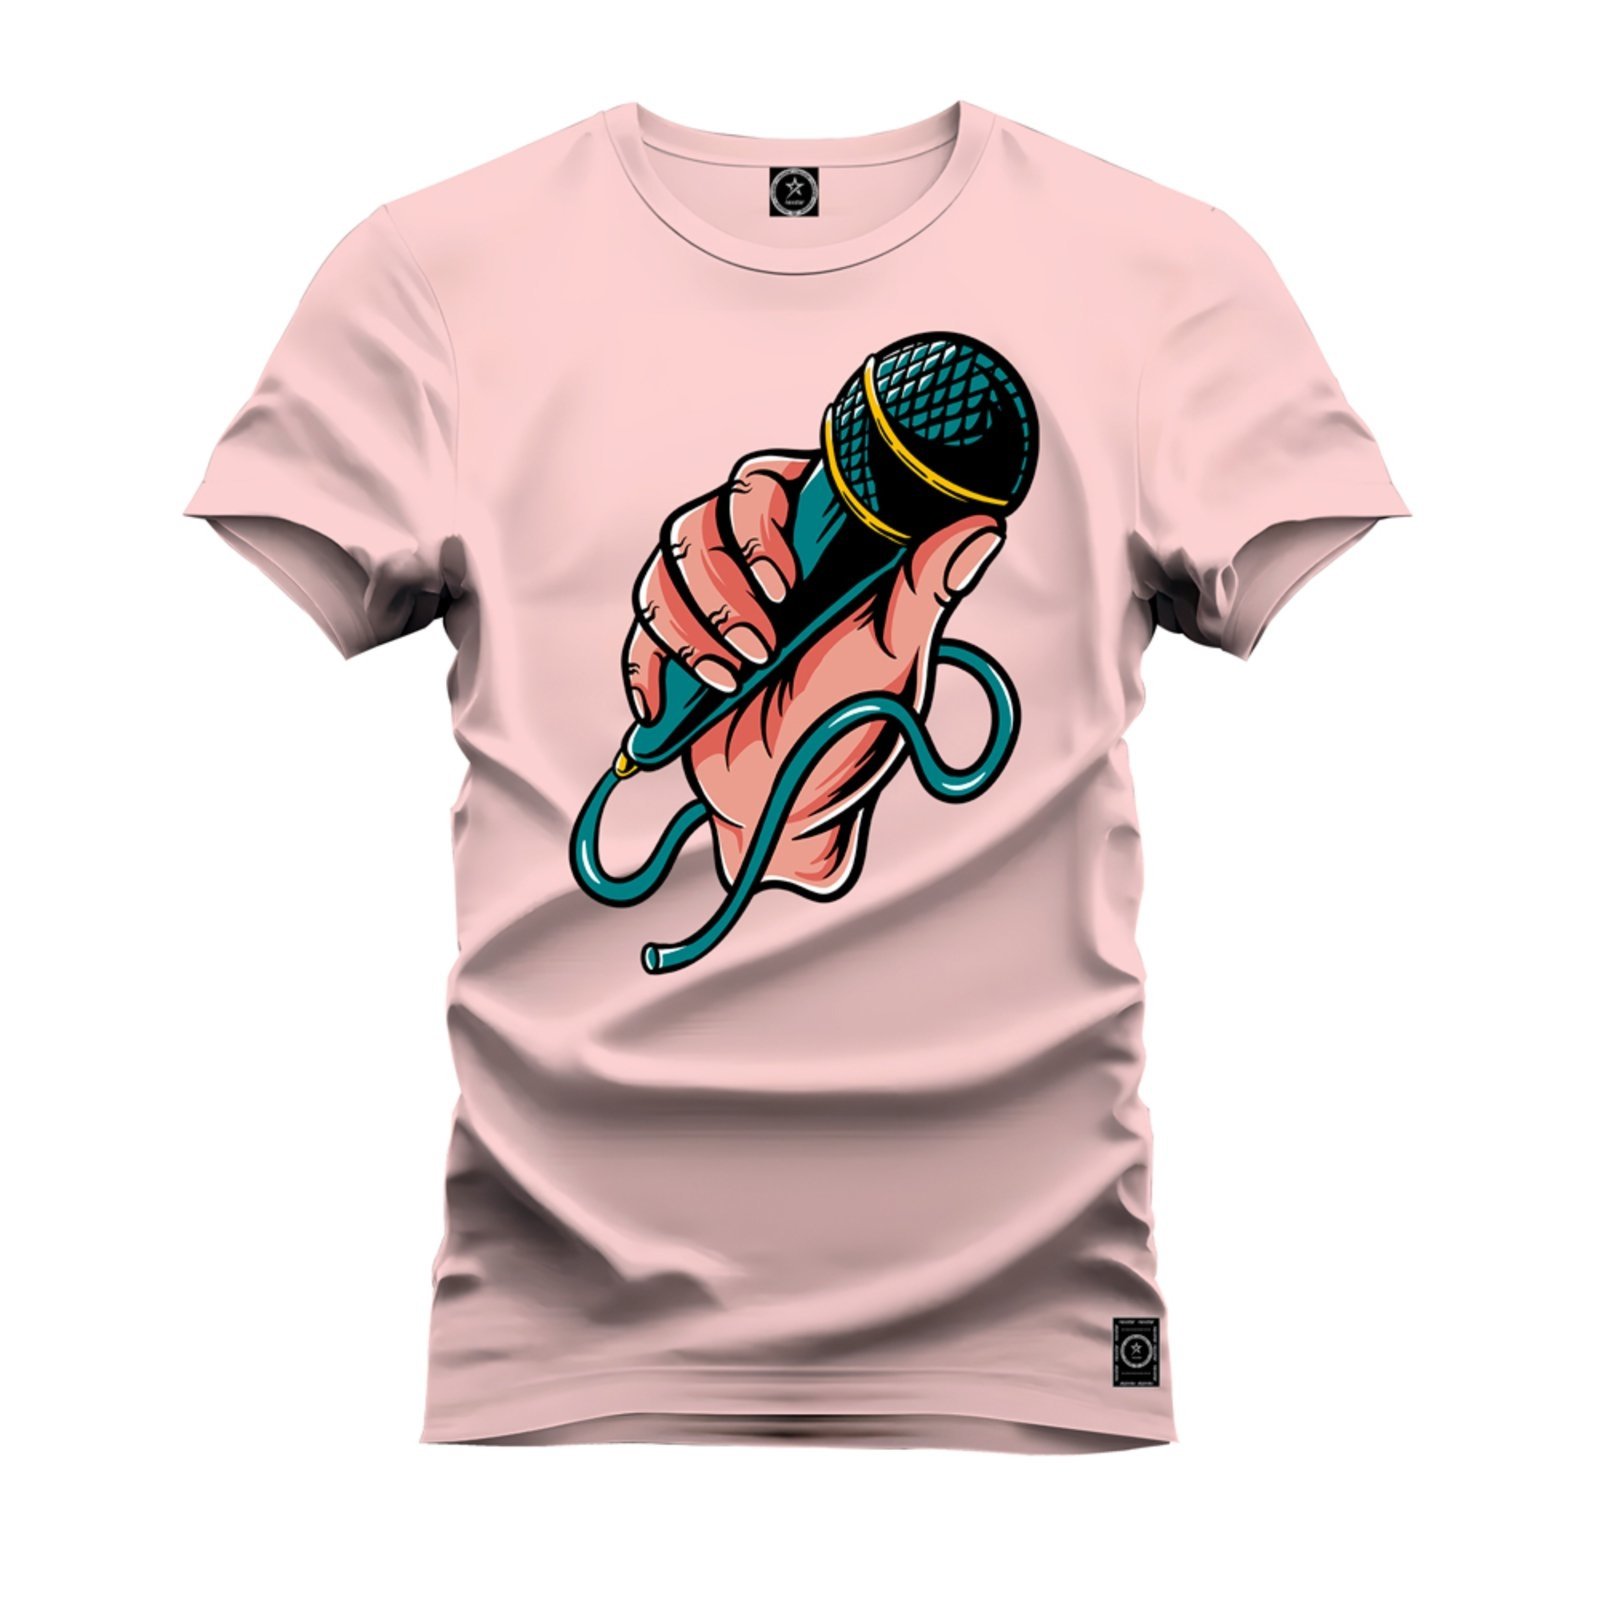 Camiseta Plus Size Premium 100% Algodão Estampada Shirt Unissex Microfone Teste - Rosa